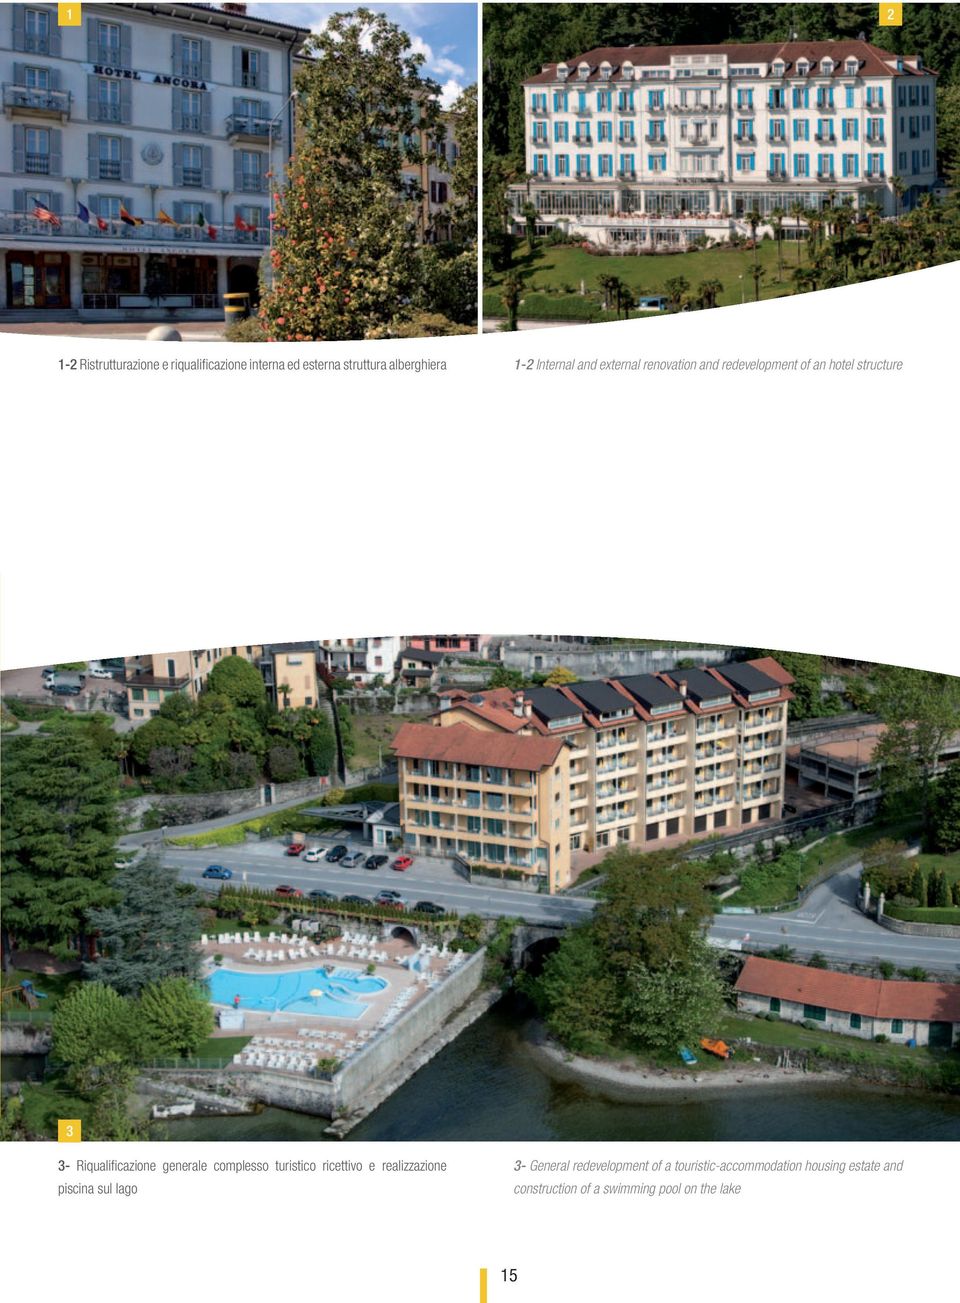 Riqualificazione generale complesso turistico ricettivo e realizzazione piscina sul lago 3-